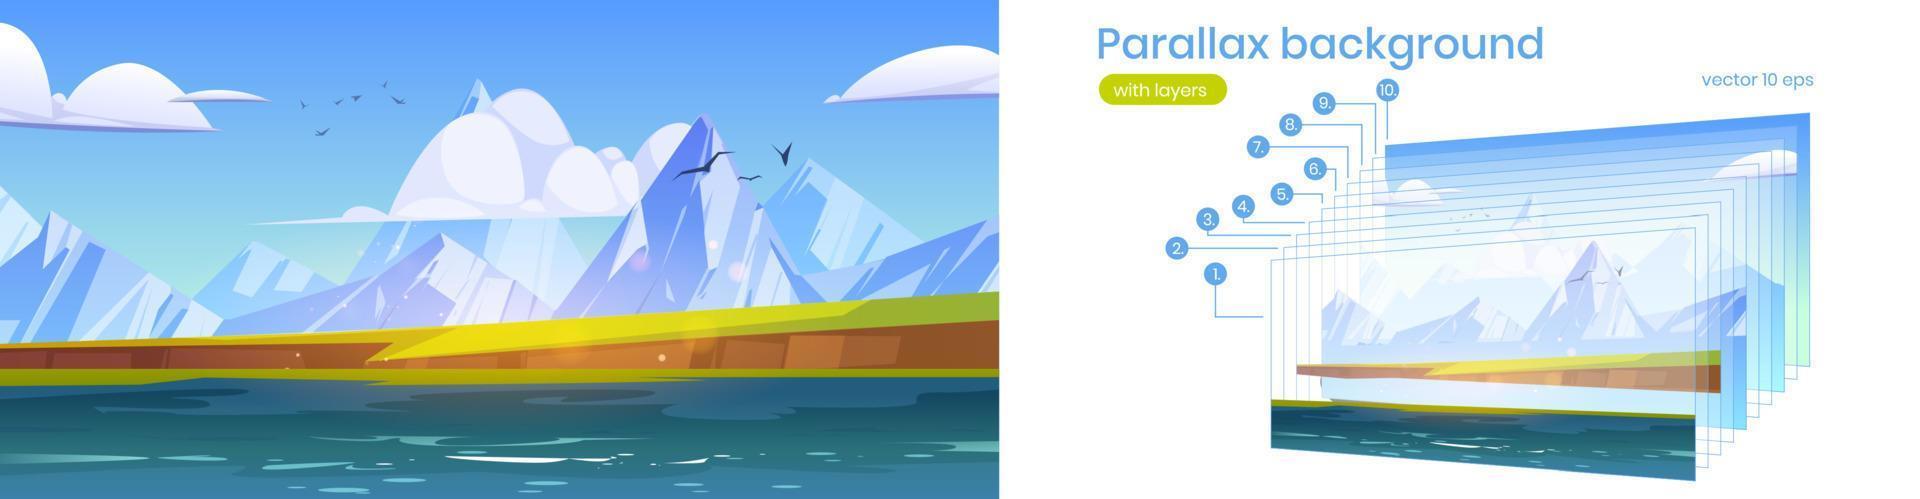 Parallax background, ocean or sea view, mountains vector